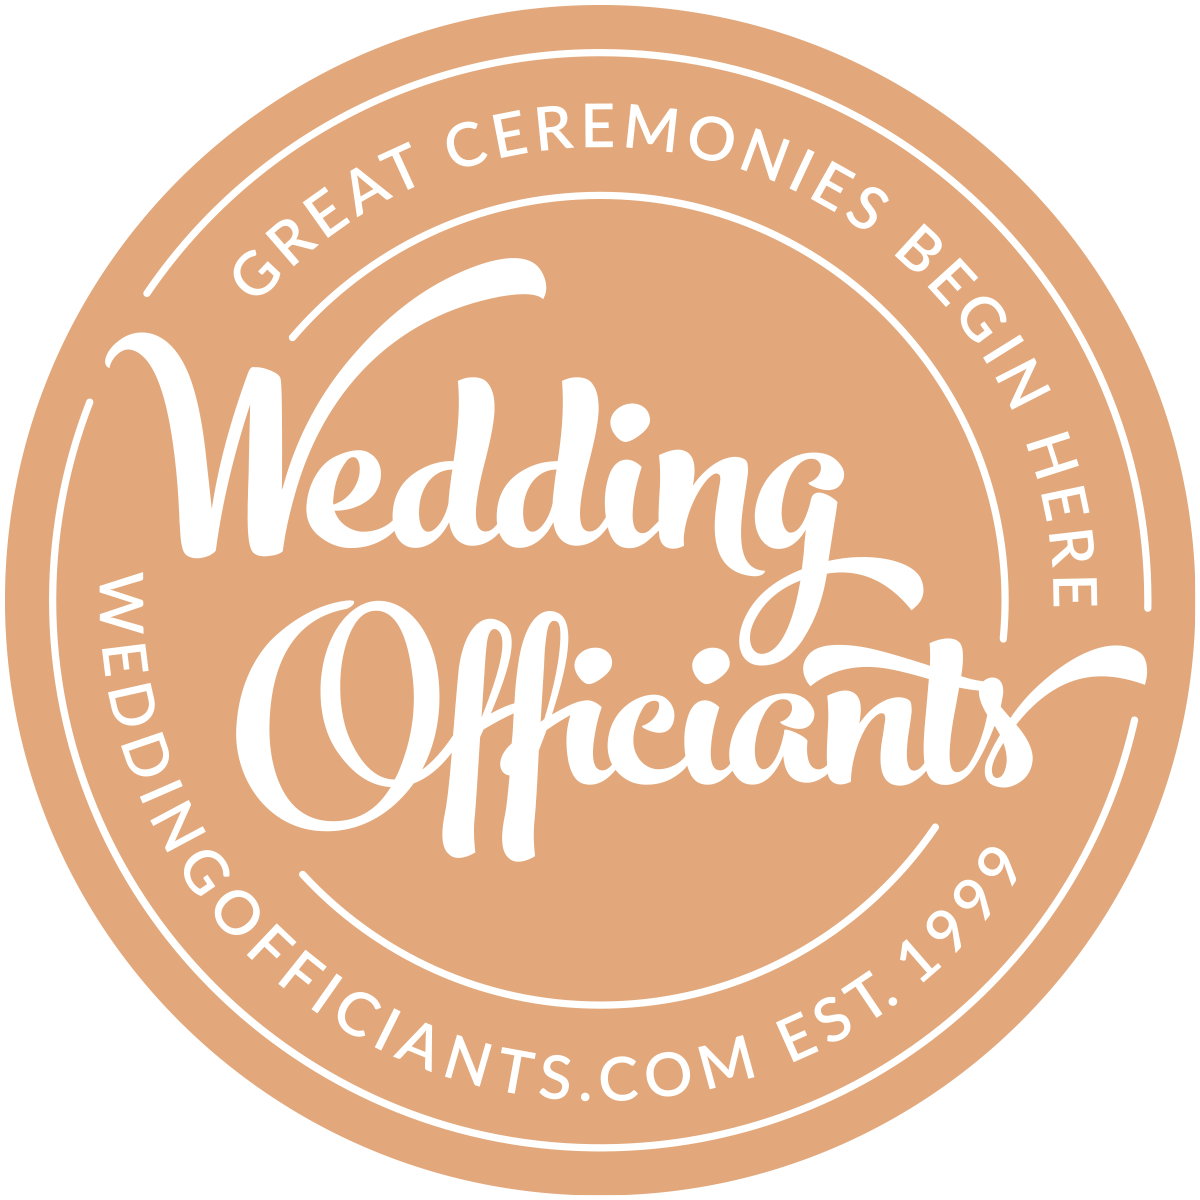 Wedding Officiants - Great Ceremonies Begin Here